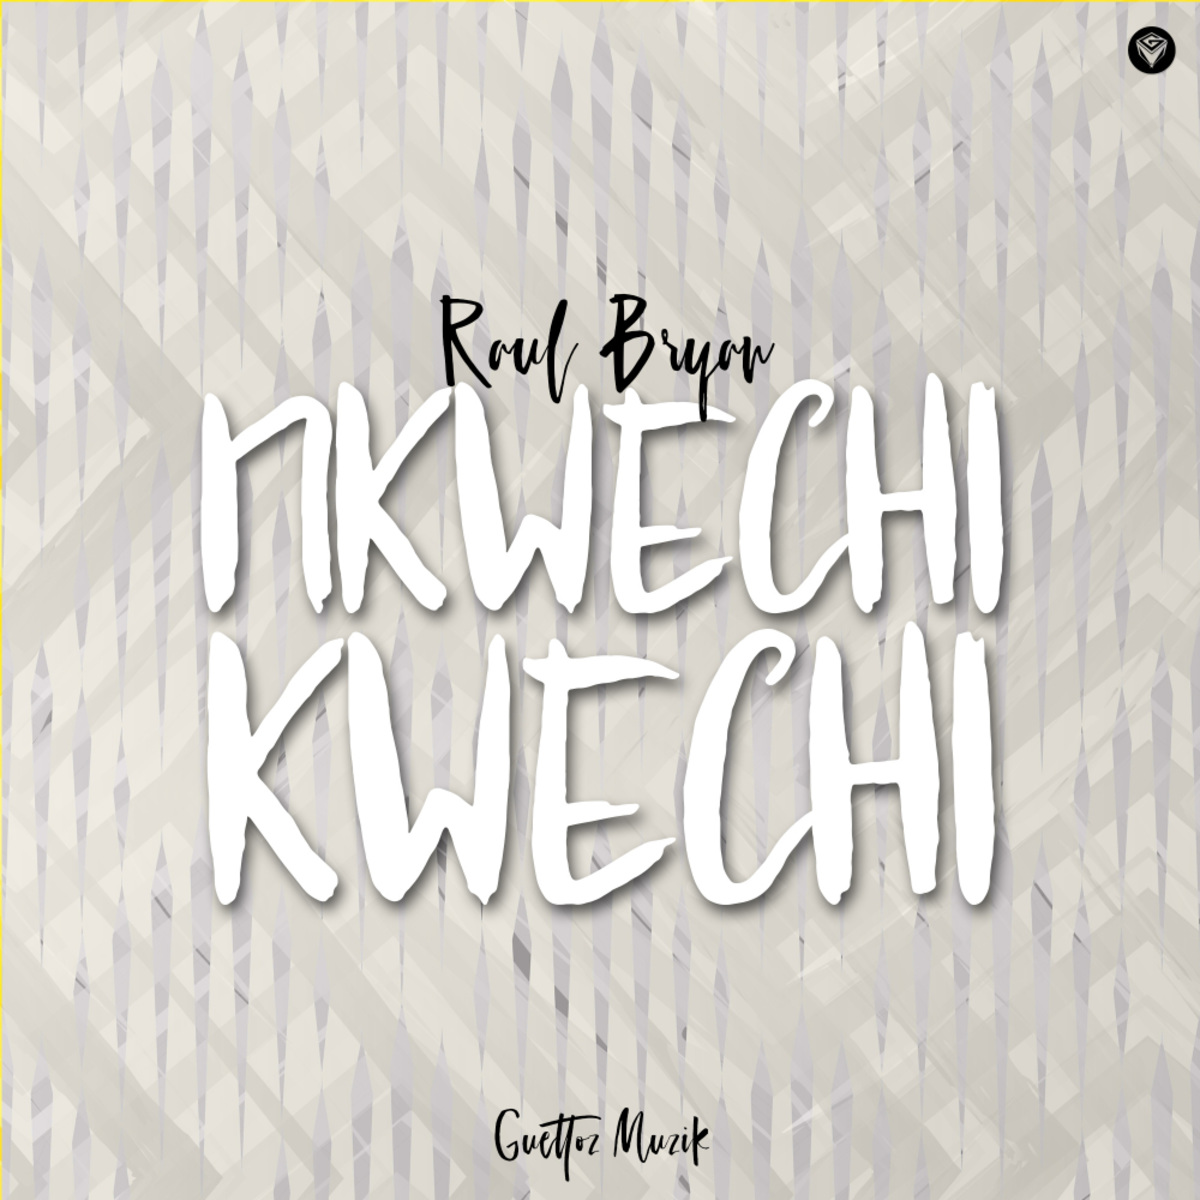 Raul Bryan - Nkwechi Kwechi / Guettoz Muzik